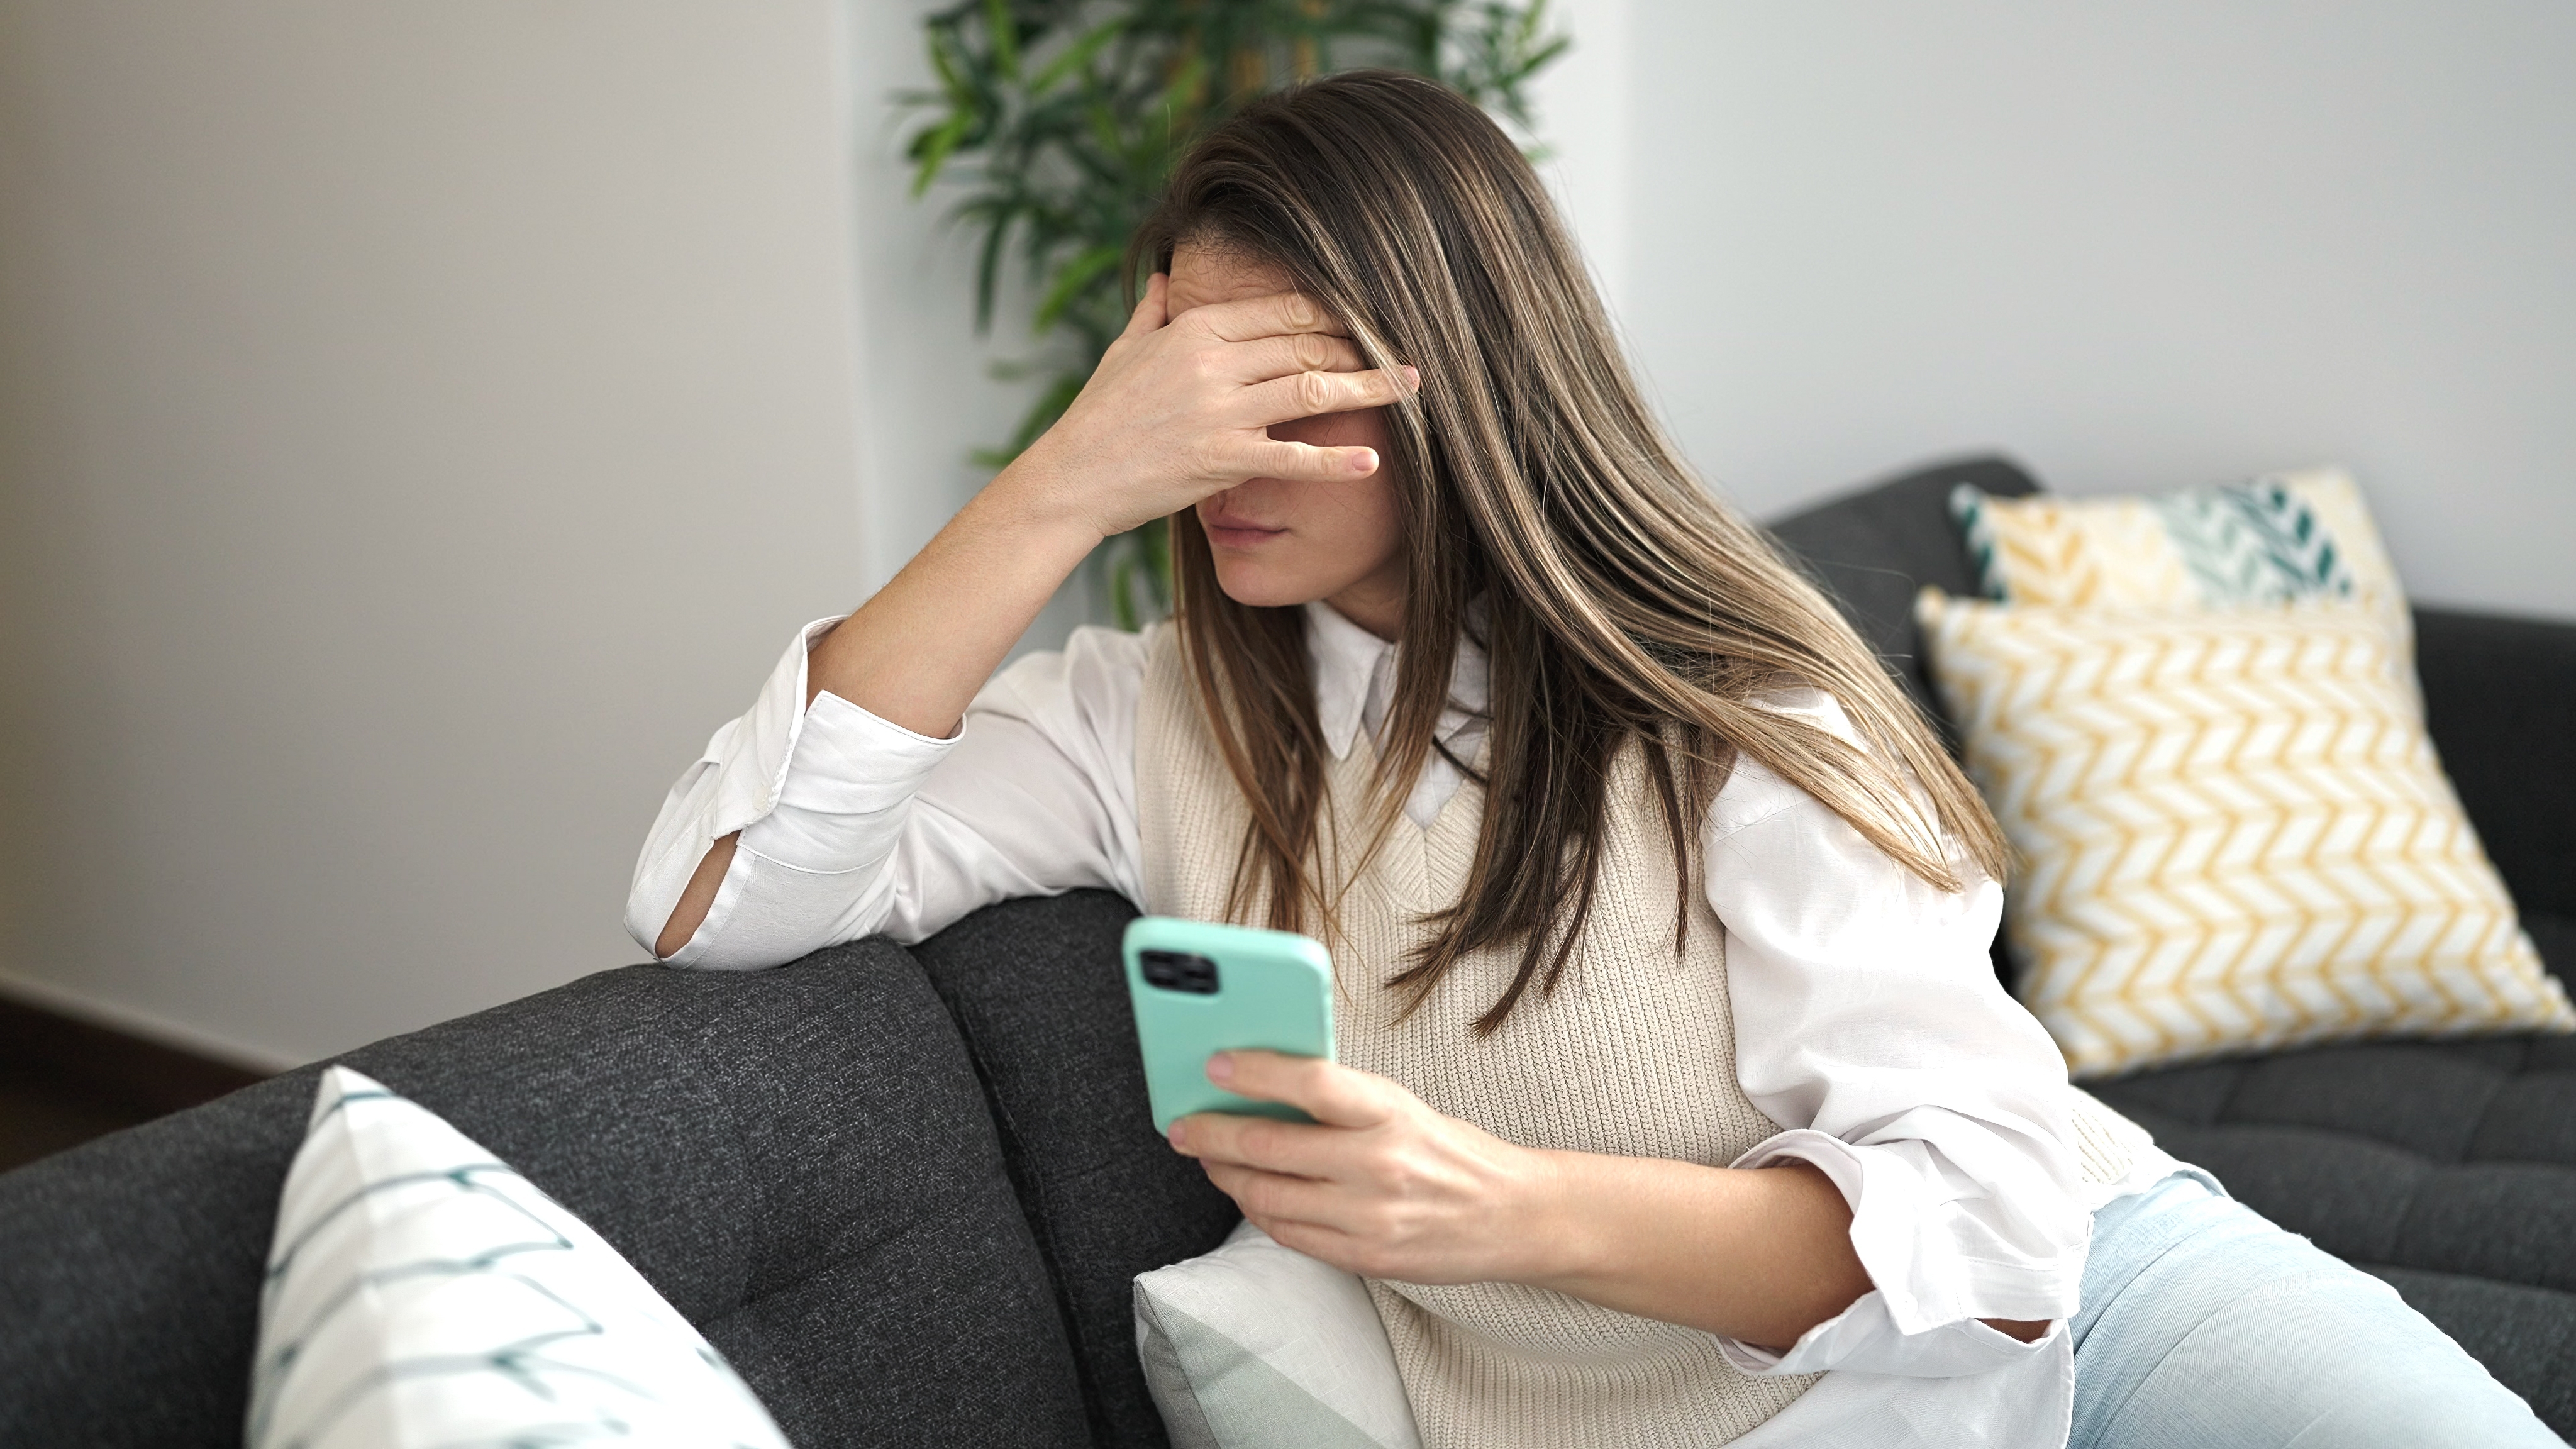 Eine Frau, die gestresst aussieht, während sie telefoniert | Quelle: Shutterstock